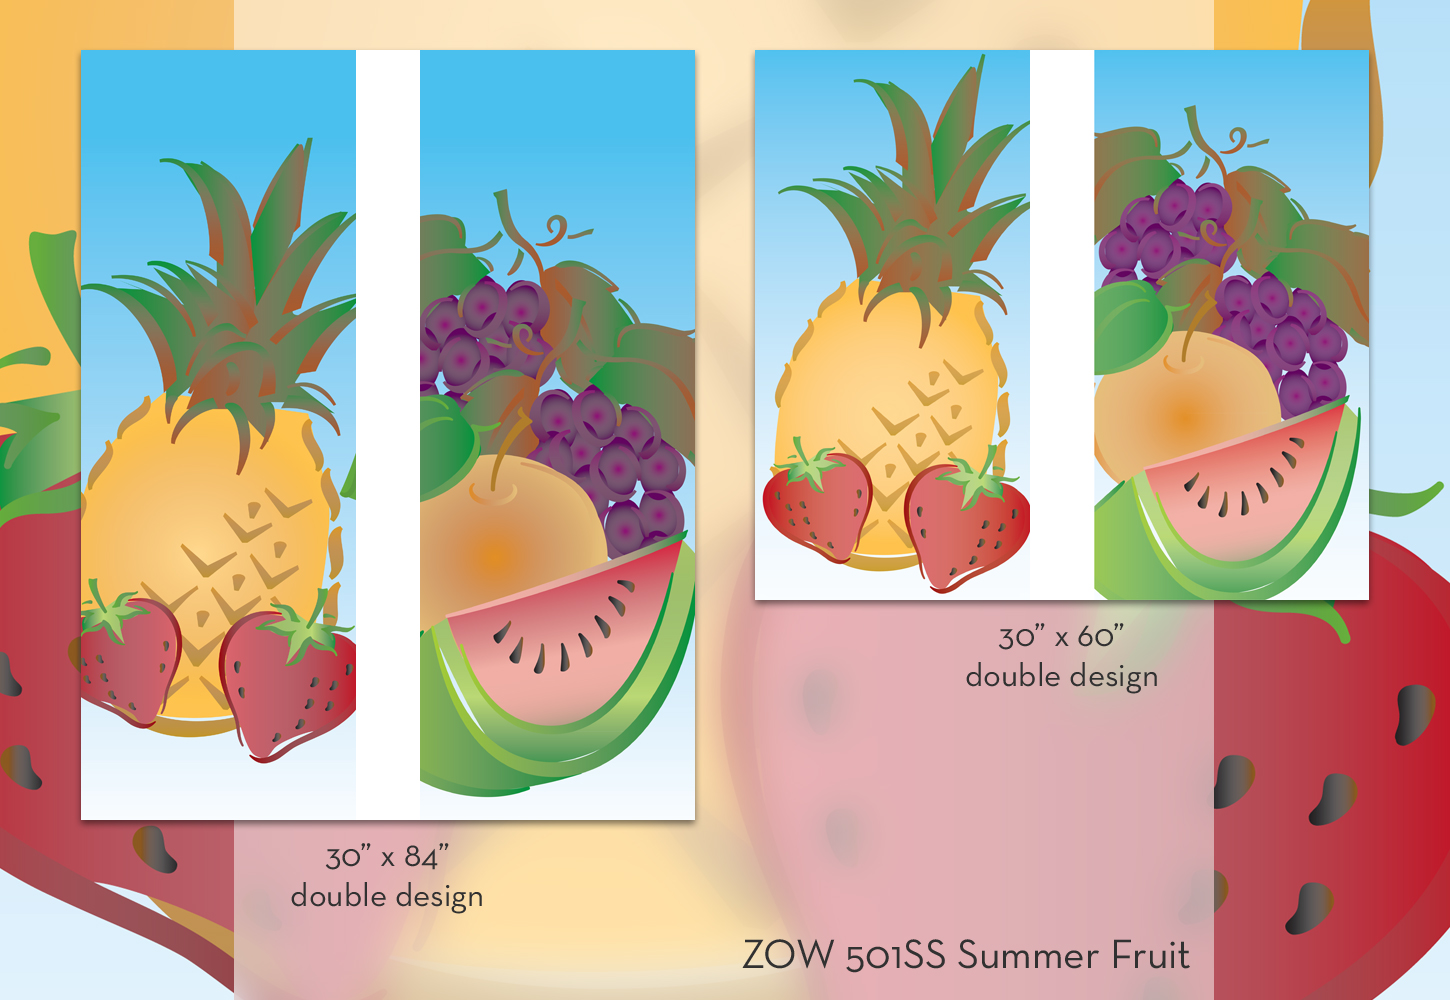 ZOW 501SS Summer Fruit